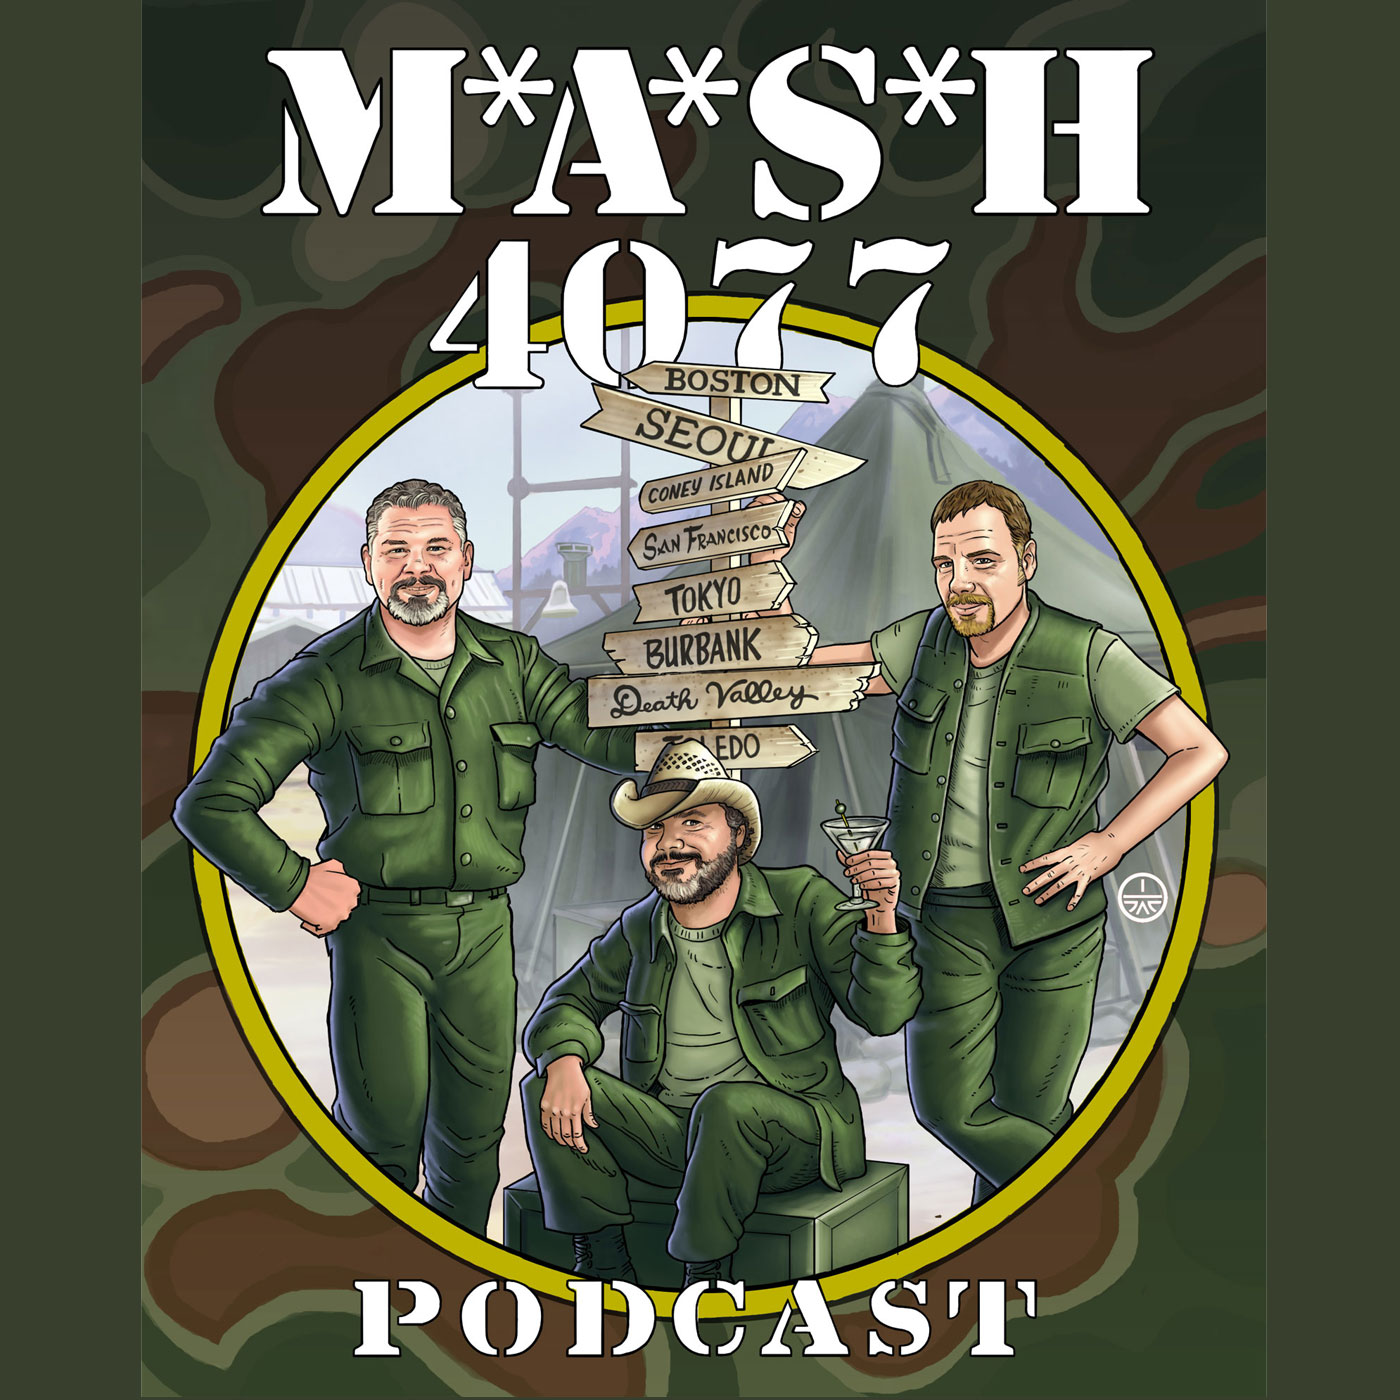 MASH 4077 Podcast Episode 1